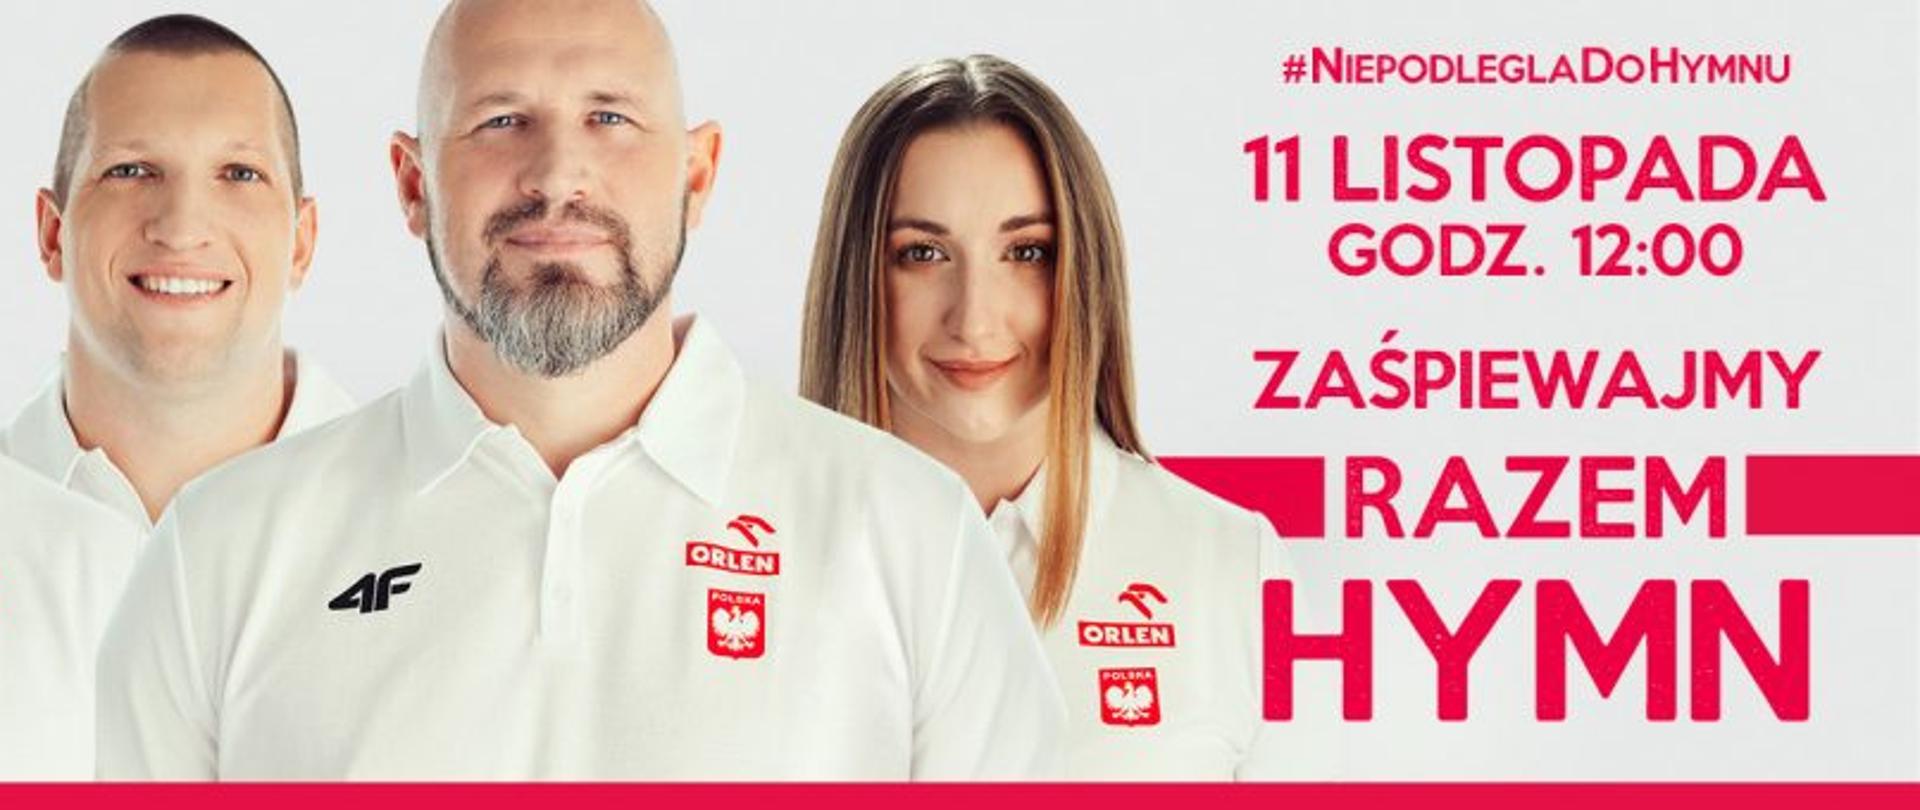 na zdjęciu znajduje się 4 sportowców reprezentacji Polski, a z prawej strony czerwony napis #NIEPODLEGLADOHYMNU 11 LISTOPADA GODZ: 12:00 ZAŚPIEWAJMY RAZEM HYMN